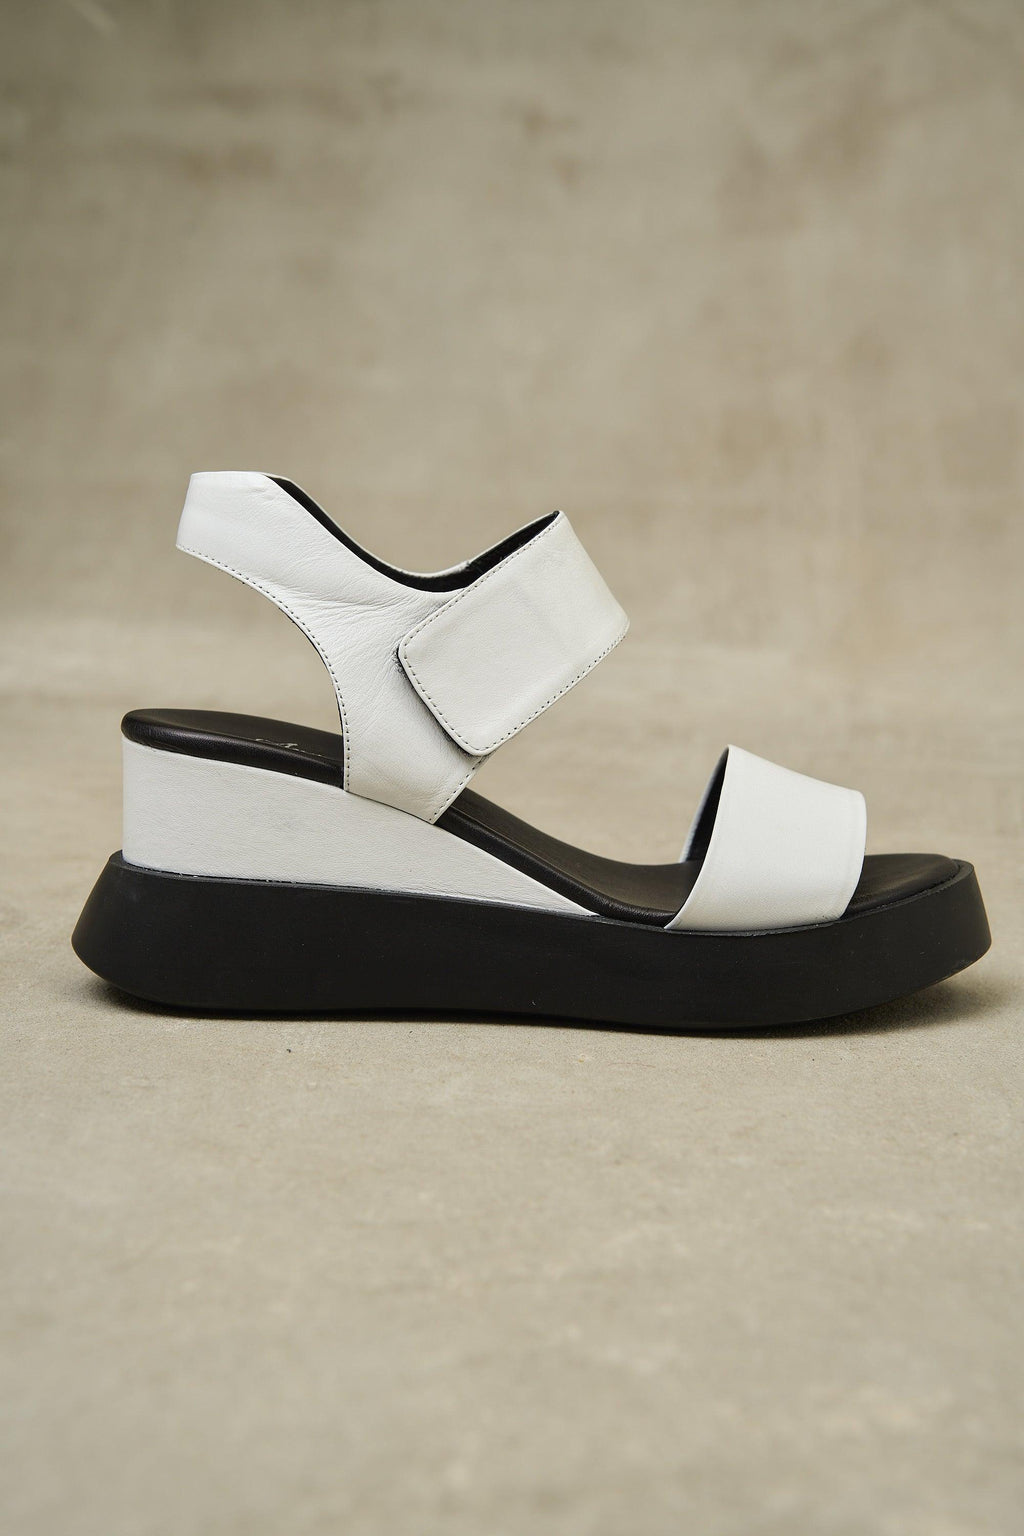 Cample Platforms – Lonza Shoes